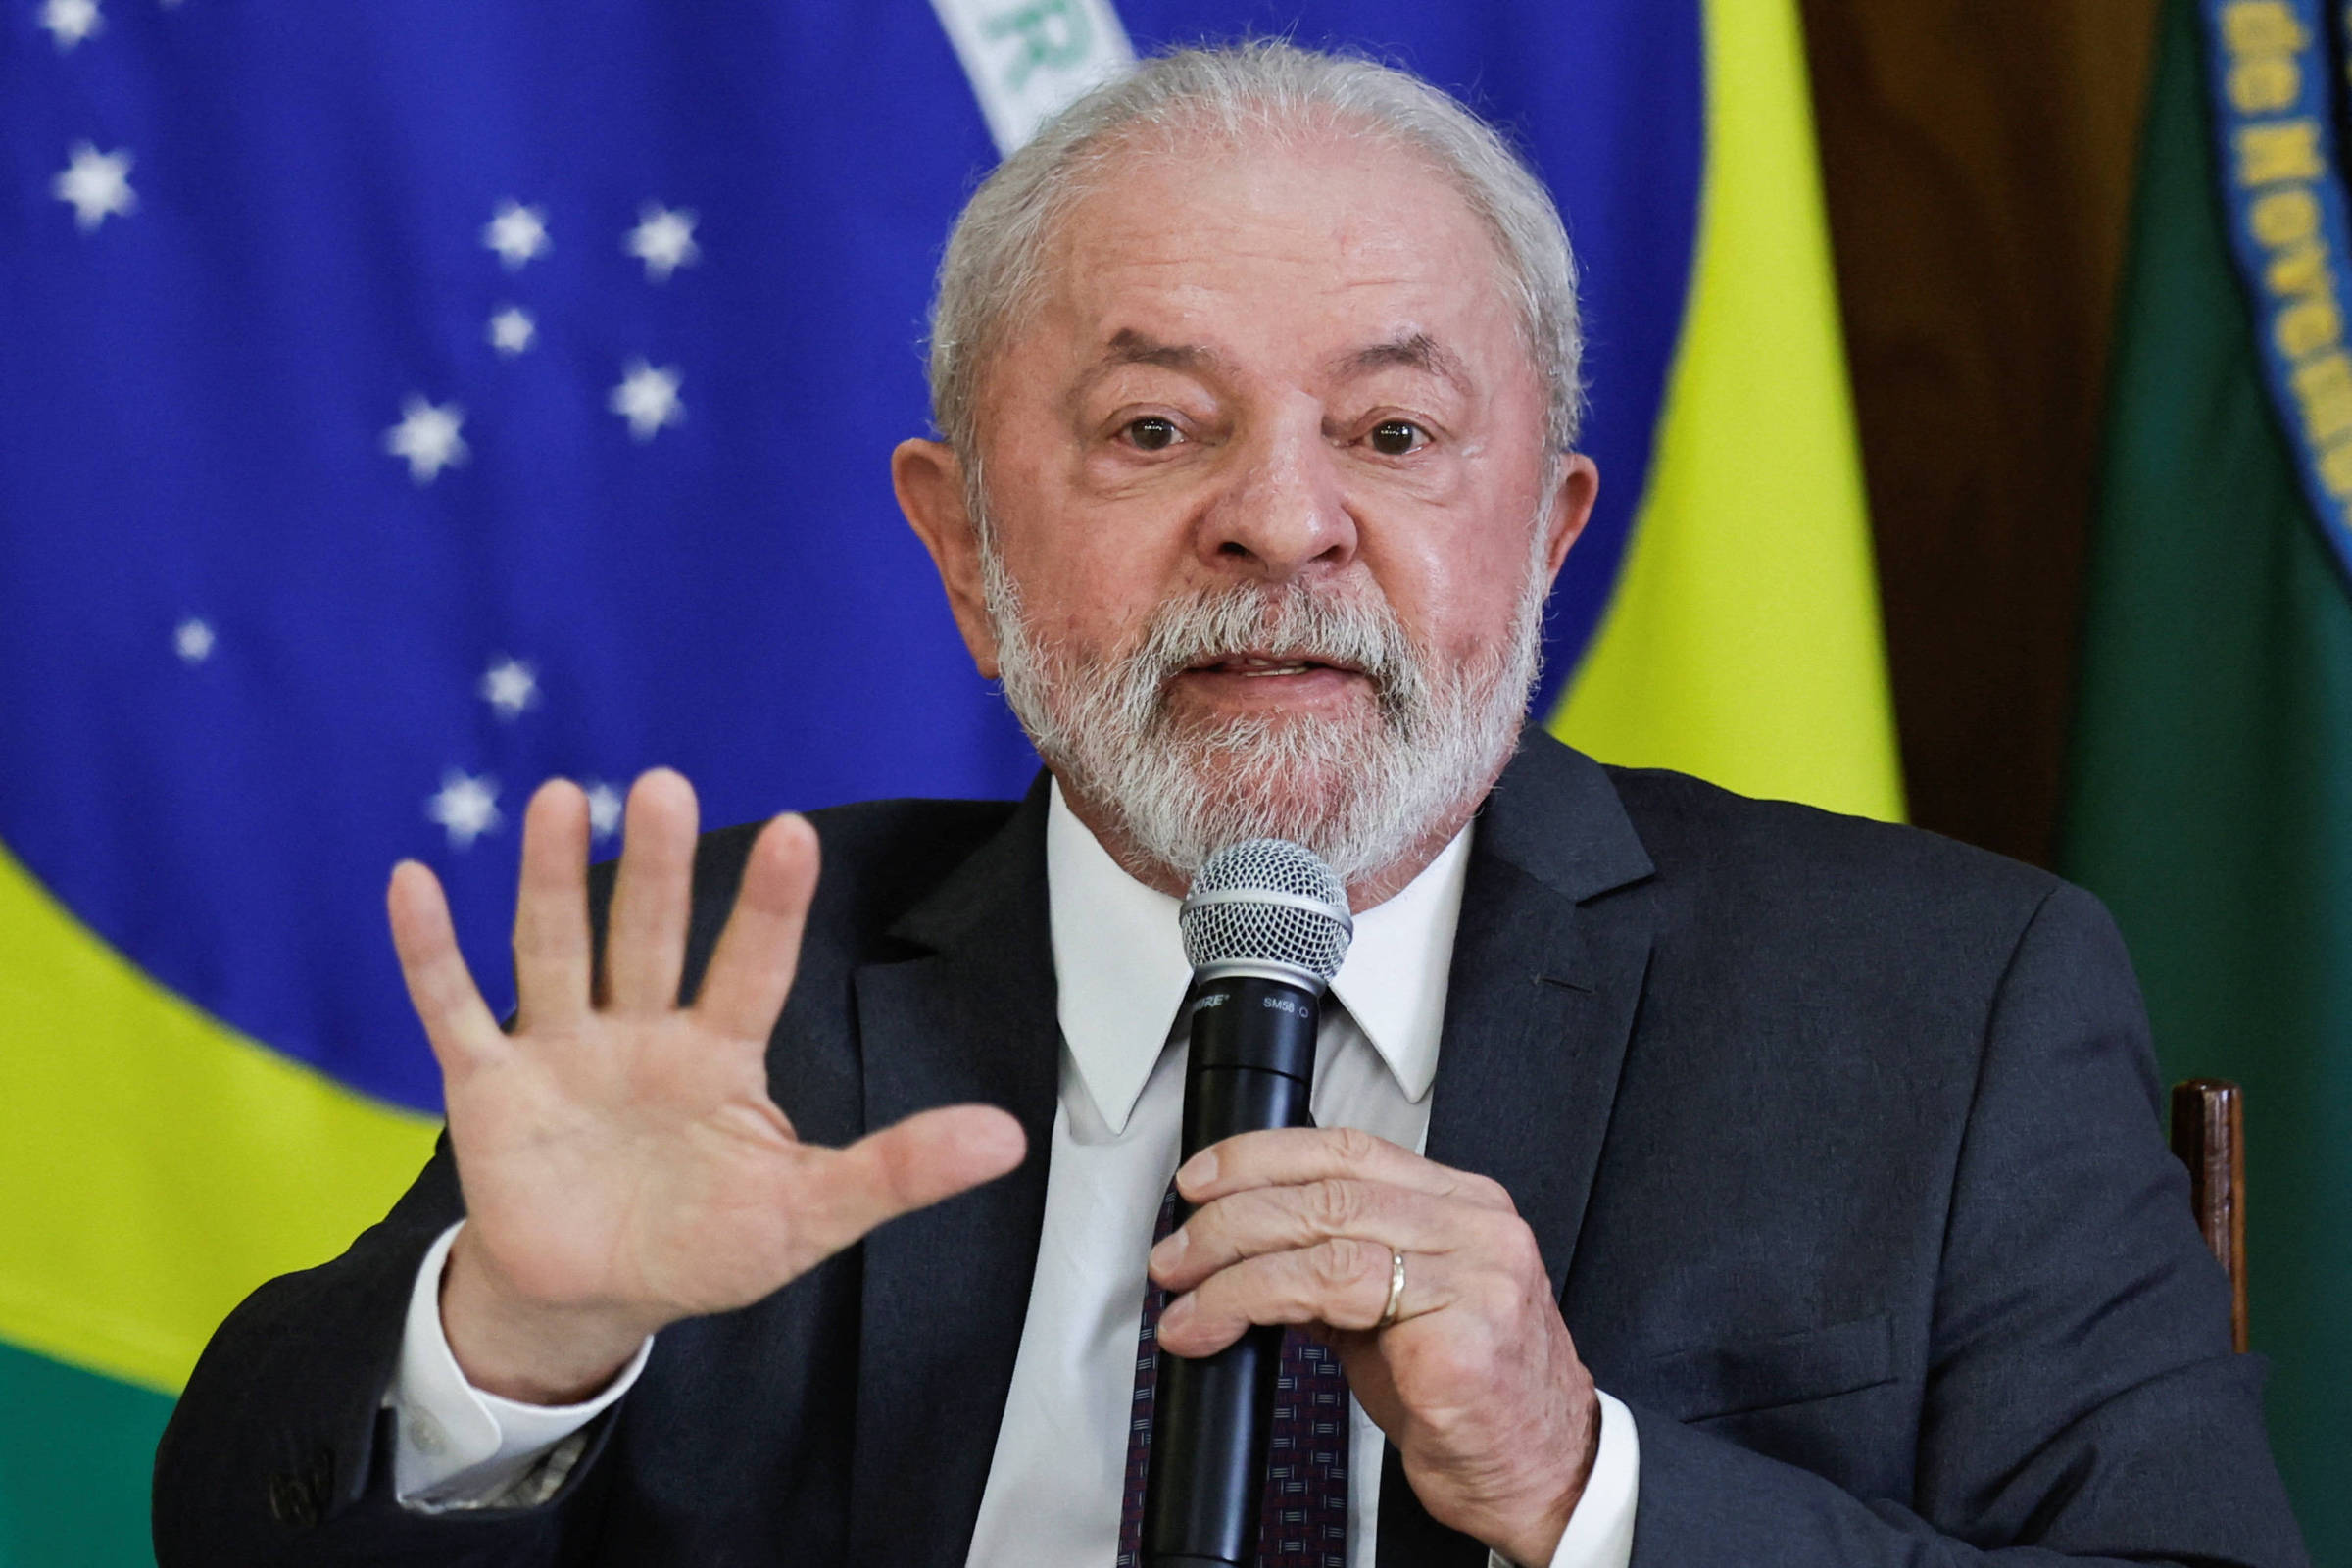 Lula recicla programas do passado nos 100 dias, mas trava em novas promessas